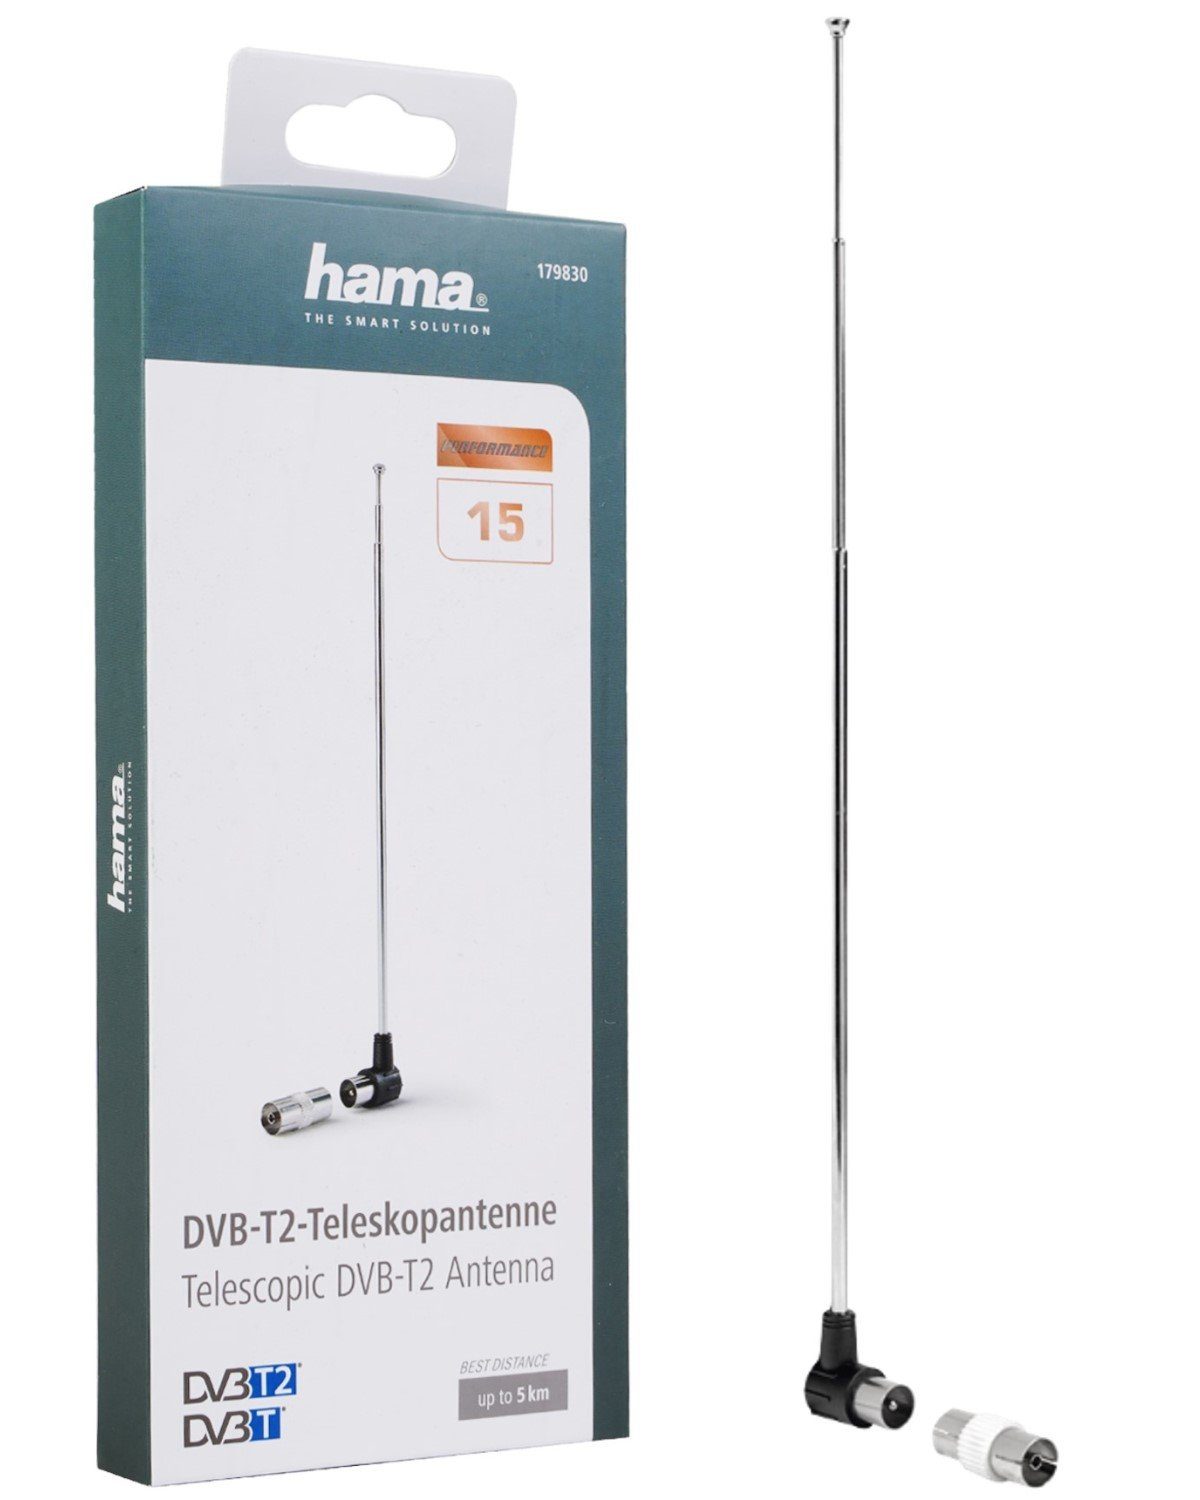 Hama DVB-T2 Stab-Antenne 4K FULL HD TV Performance Innenantenne, 4K  Ultra-HD Passiv Antenne am TV Radio oder Notebook Teleskob-Antenne | Antennen